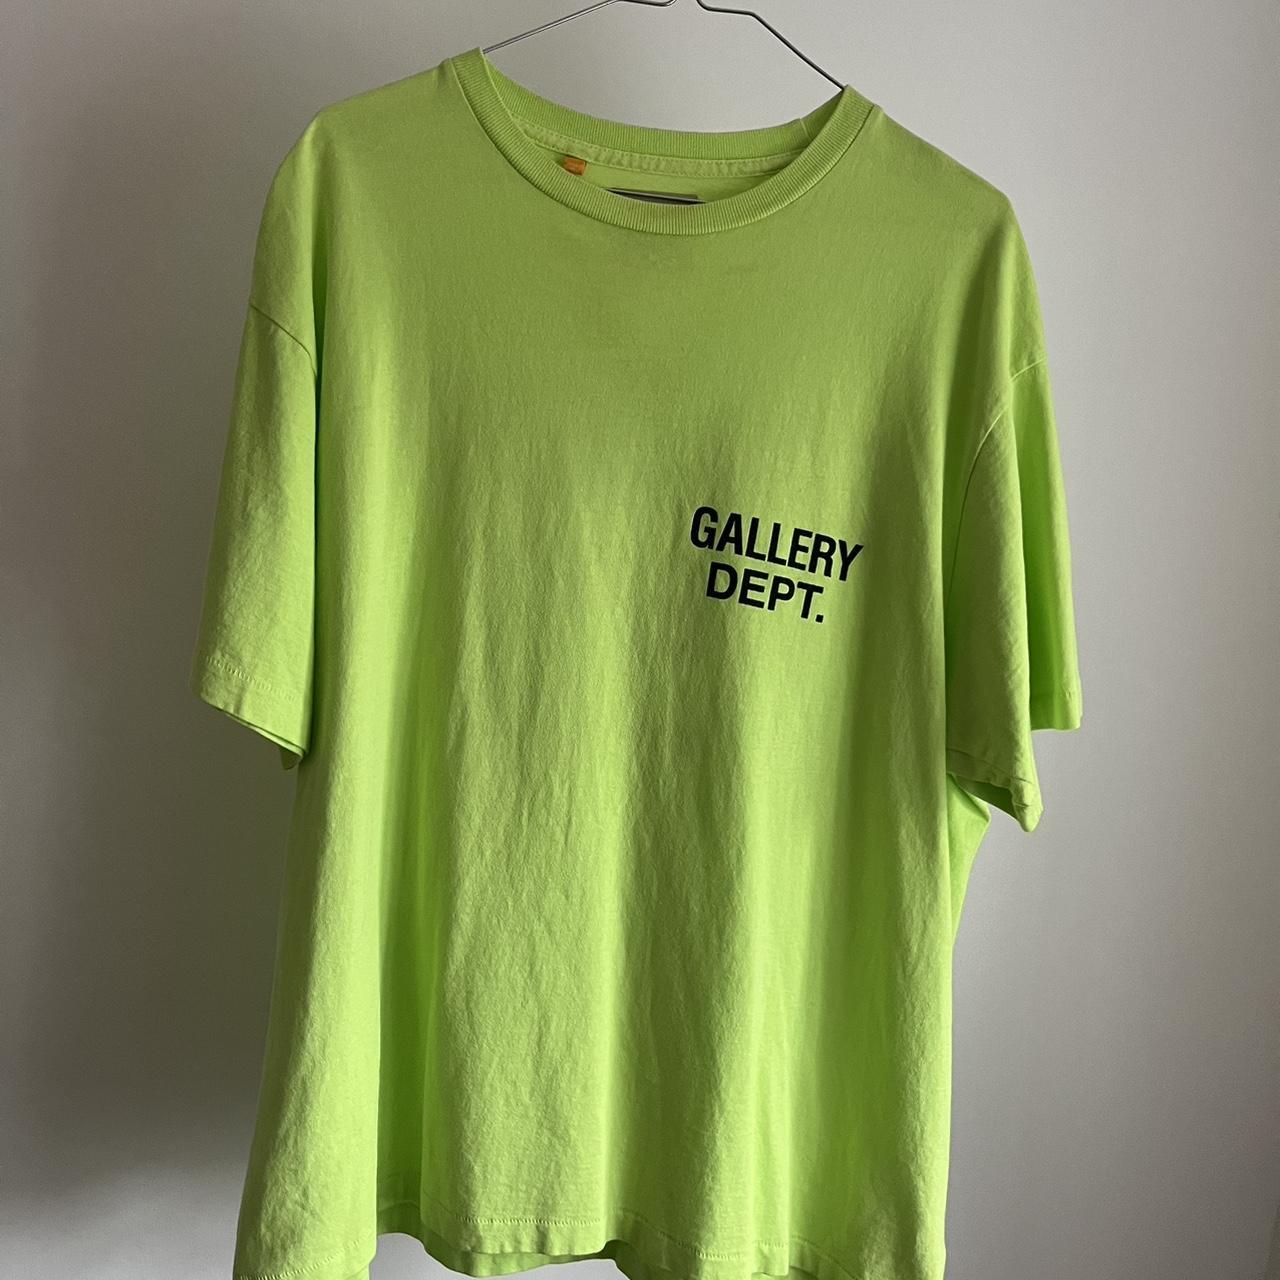 GALLERY DEPT SOUVENIR T SHIRT NEON GREEN Size:... - Depop